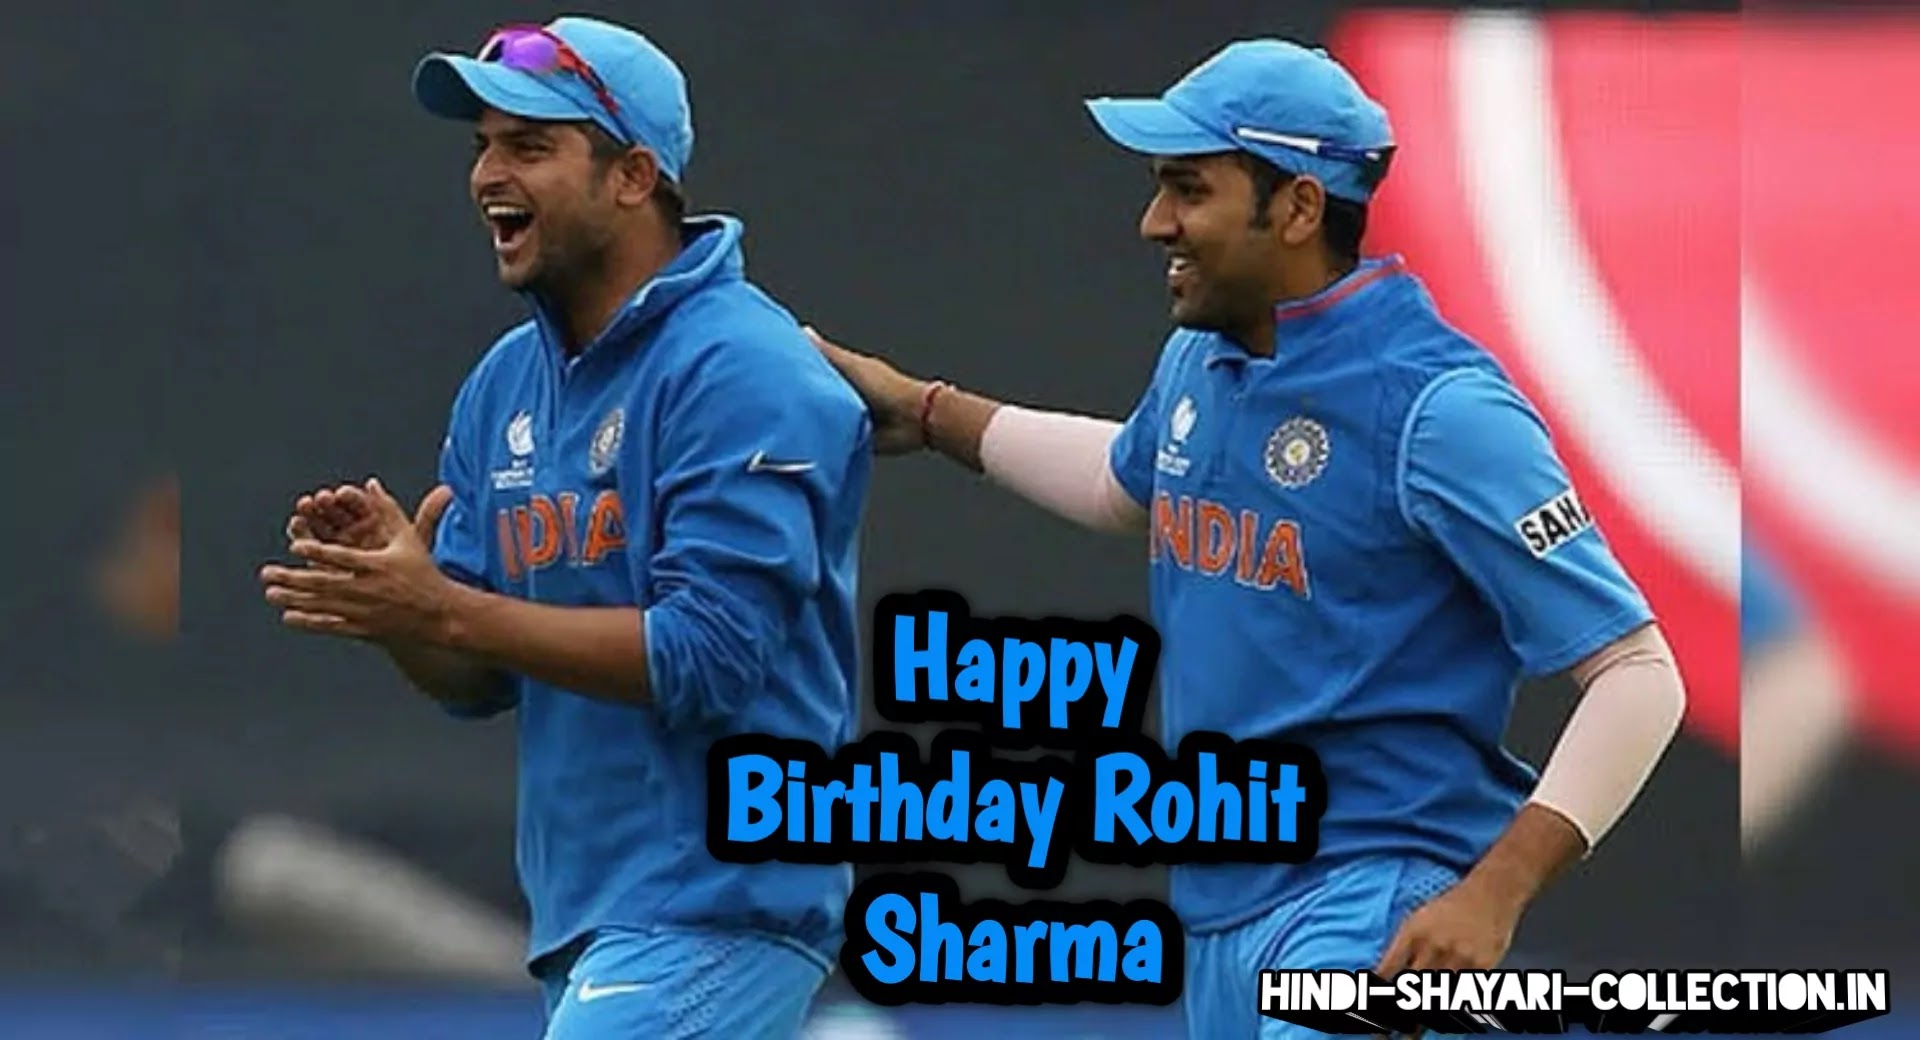 Happy birthday rohit sharma images, rohit sharma birthday wishes images, rohit sharma birthday, happy birthday rohit sharma,hitman Sharma birthday, rohit sharma birthday shayari,